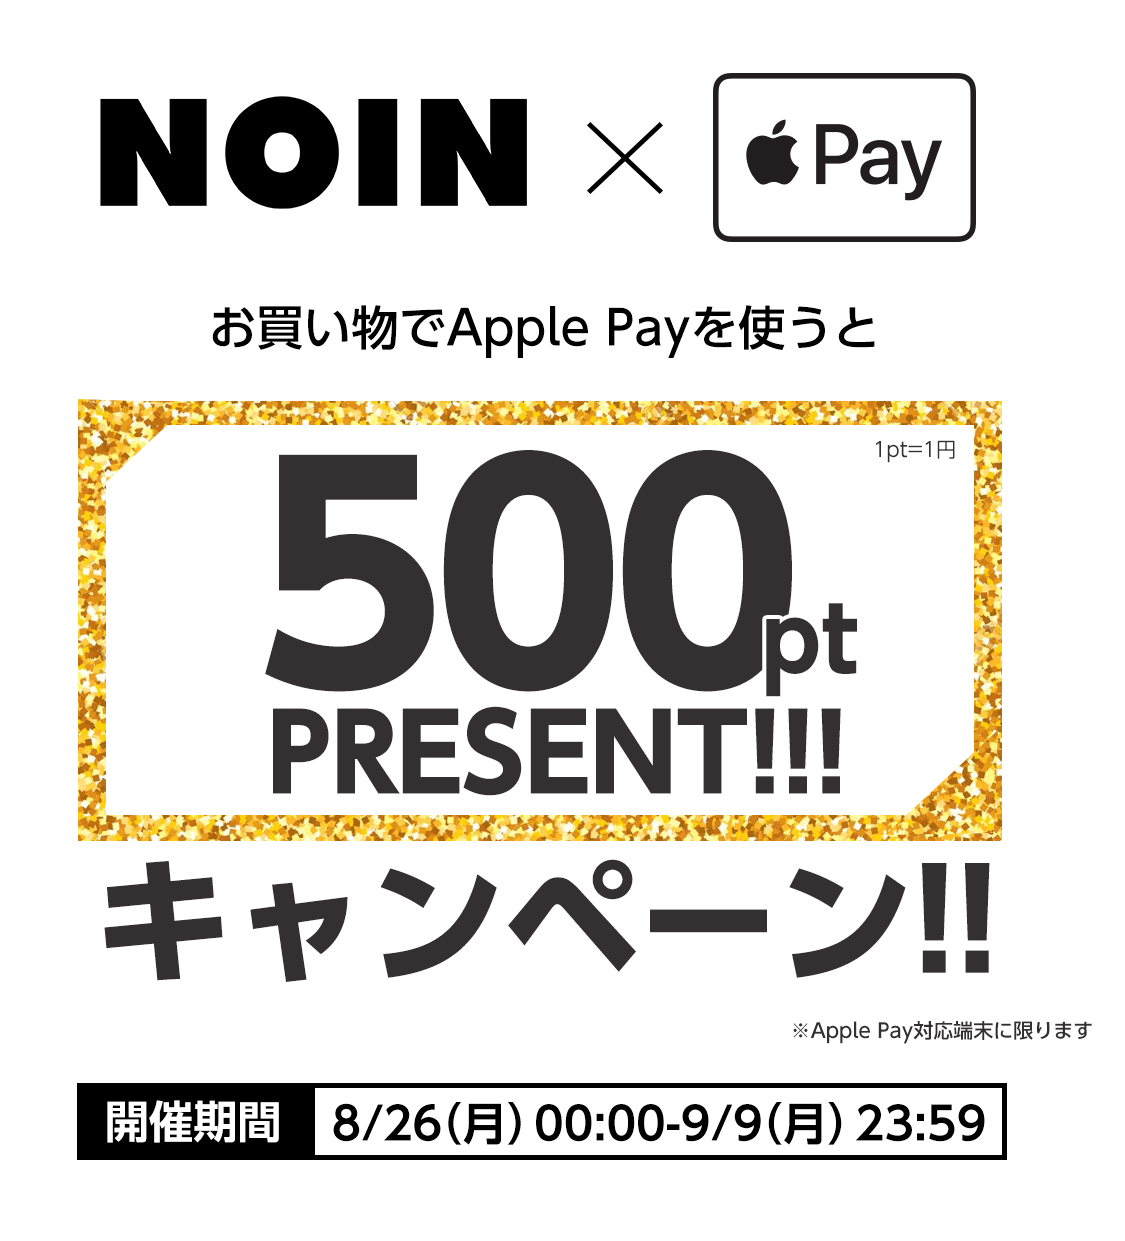 NOIN、｢Apple Pay｣利用で500ポイントをプレゼントするキャンペーンを実施中